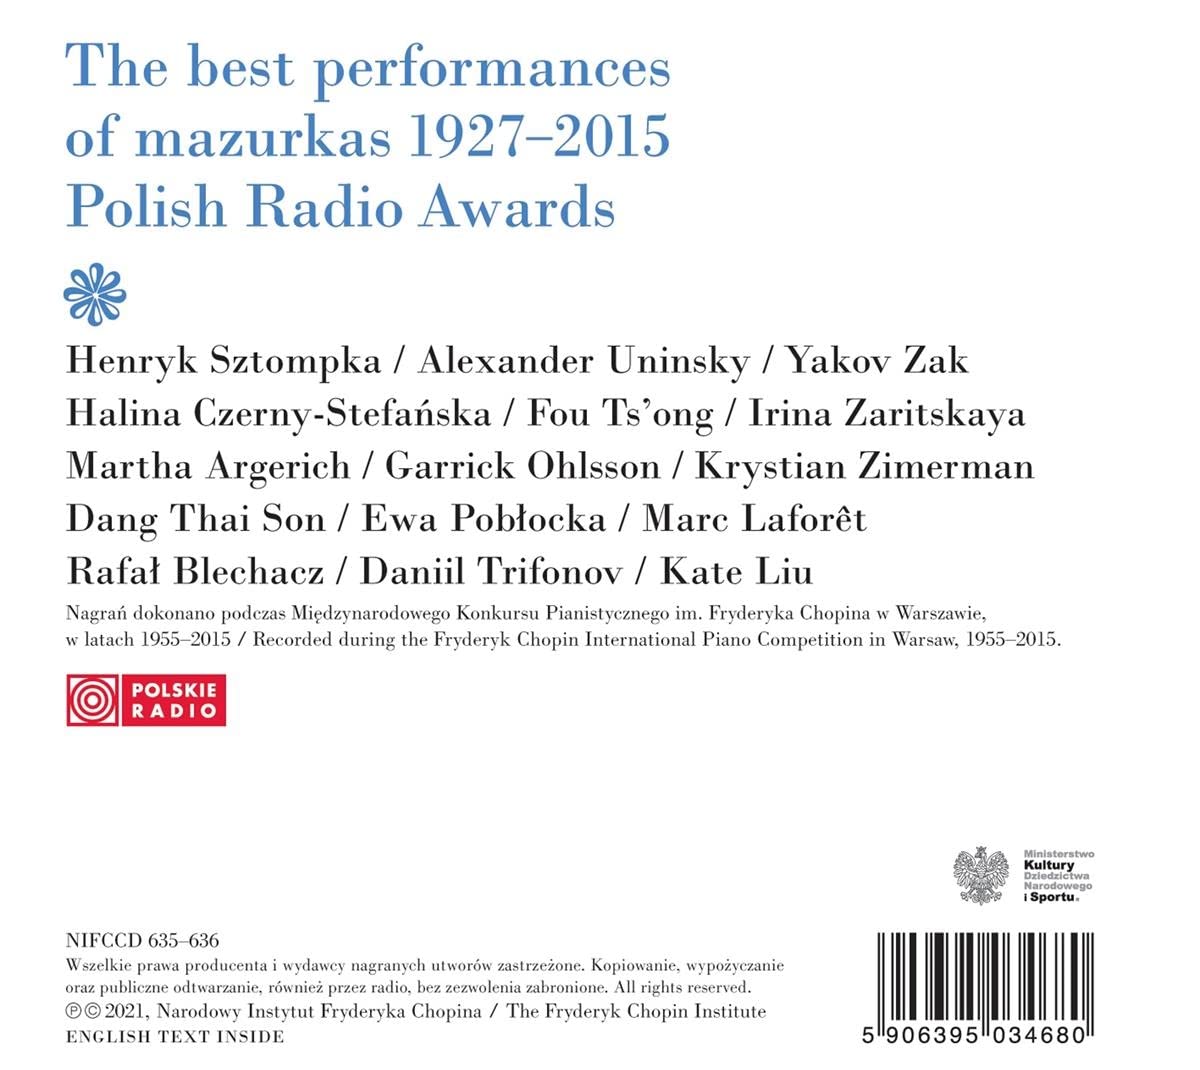 1927-2015 쇼팽 콩쿨 실황 - 마주르카상 수상자들의 연주 모음집 (Chopin: The Best Performances of Mazurkas 1927-2015 - Polish Radio Awards)